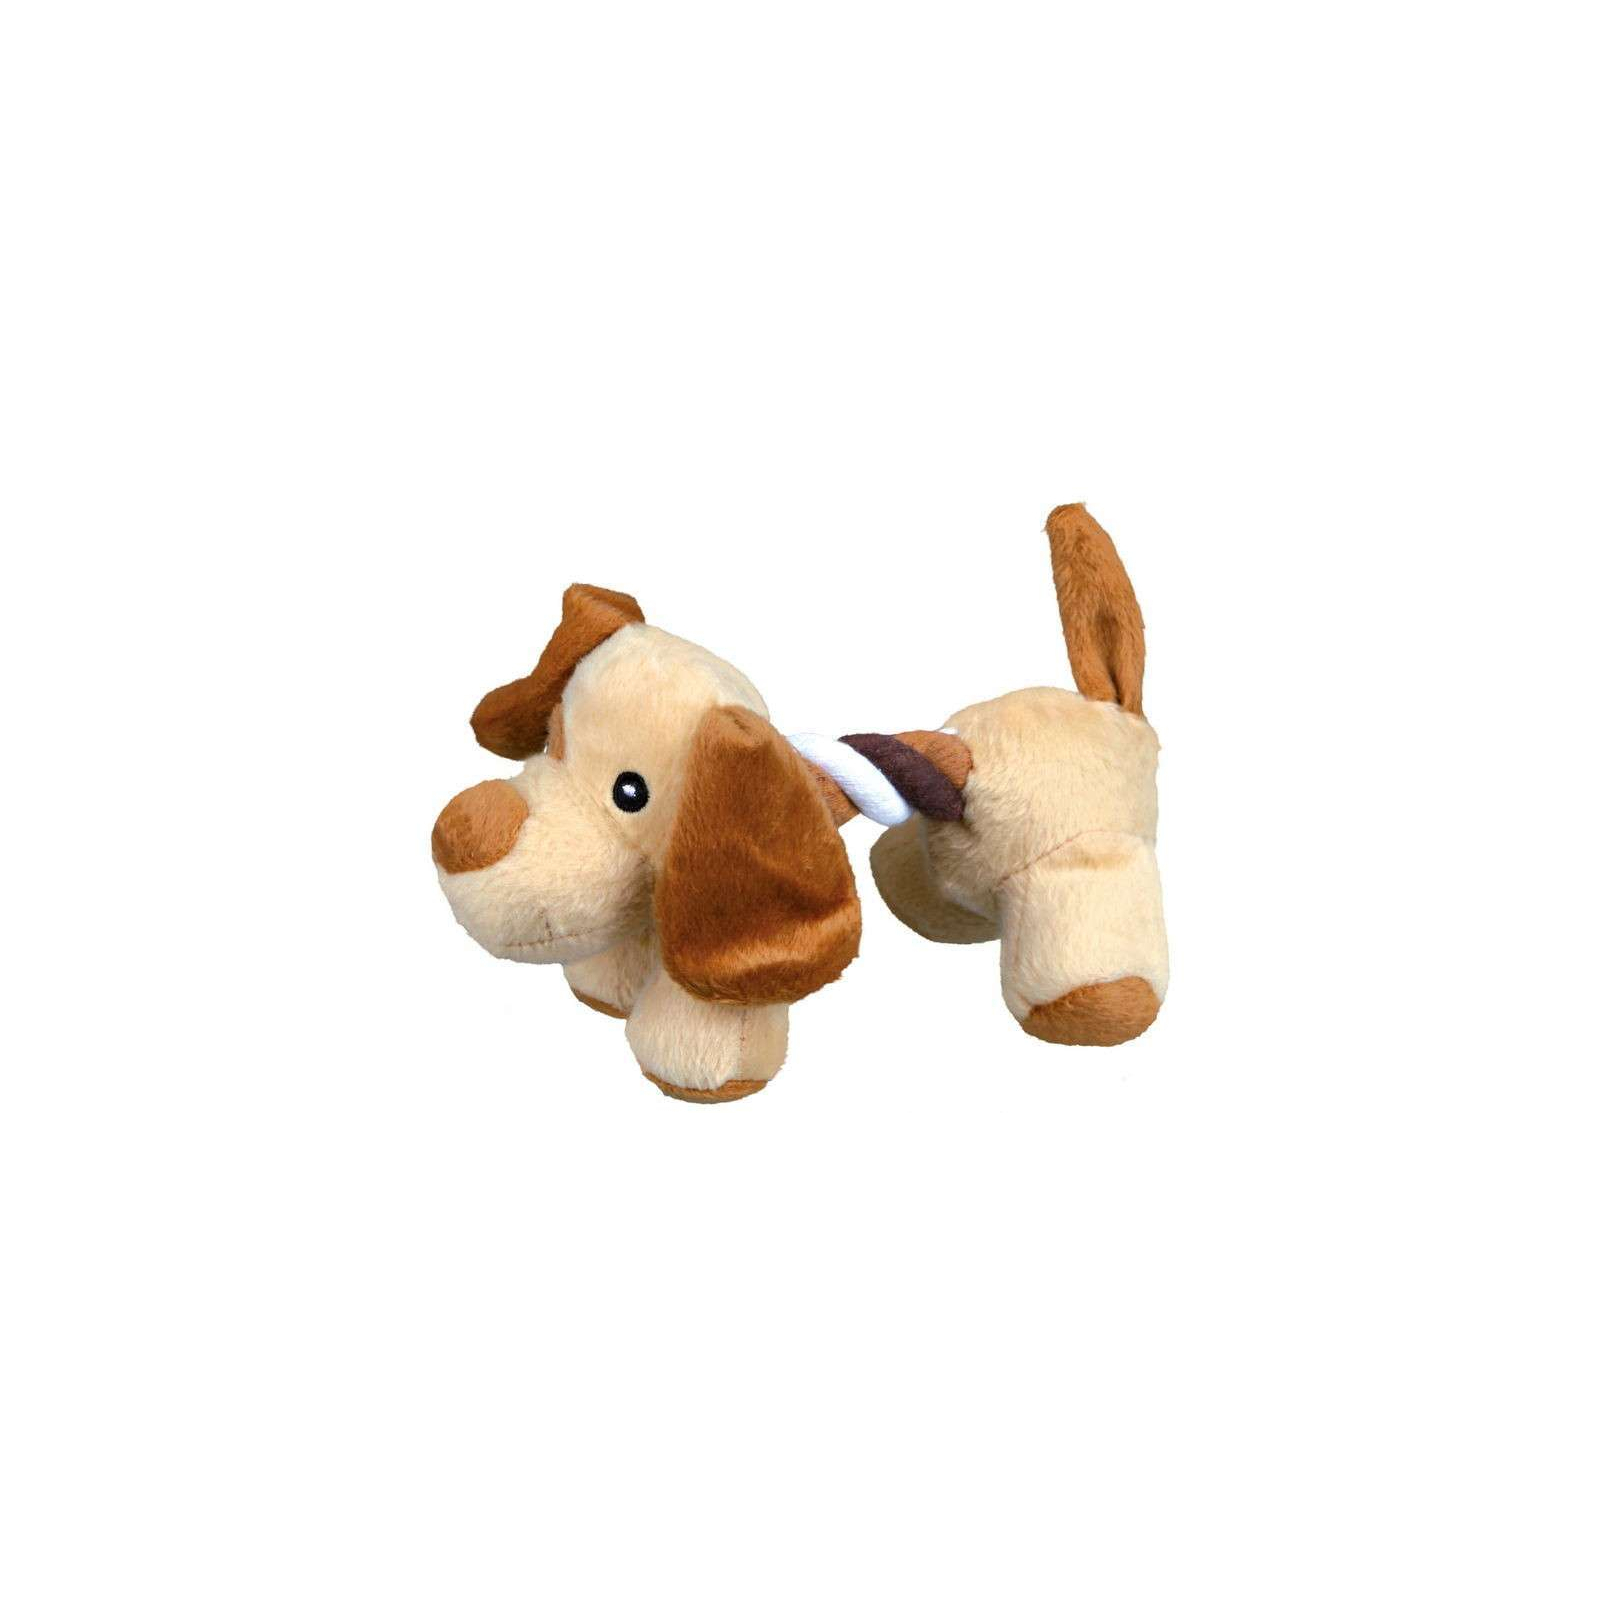 Іграшка для собак Trixie Звірятка 17 см (4047974358214)